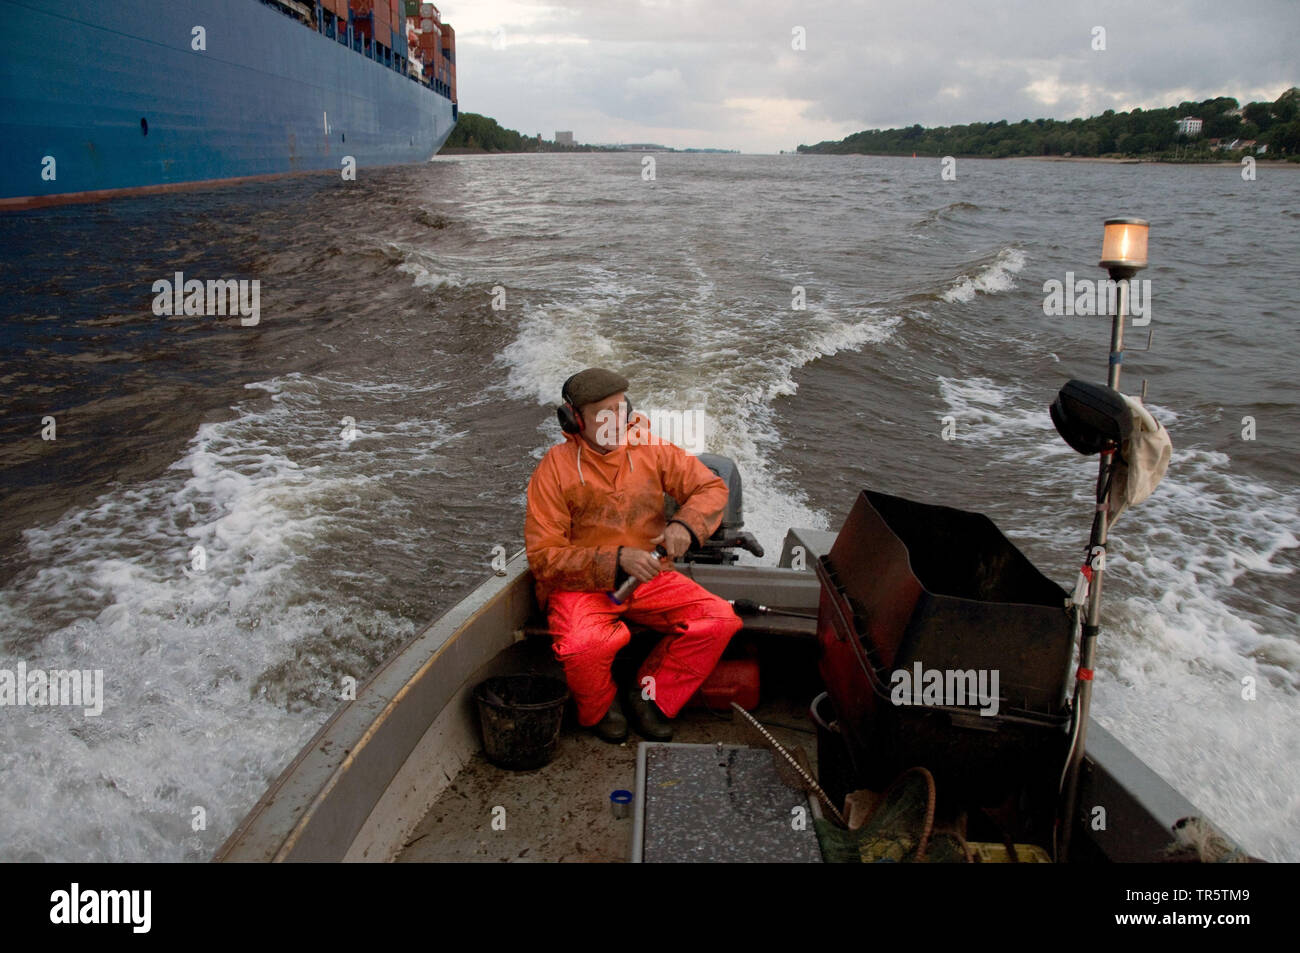 Fischerman dans un bateau de pêche sur la rivière de l'Elbe, l'Allemagne, l'Elbe, Hambourg Banque D'Images